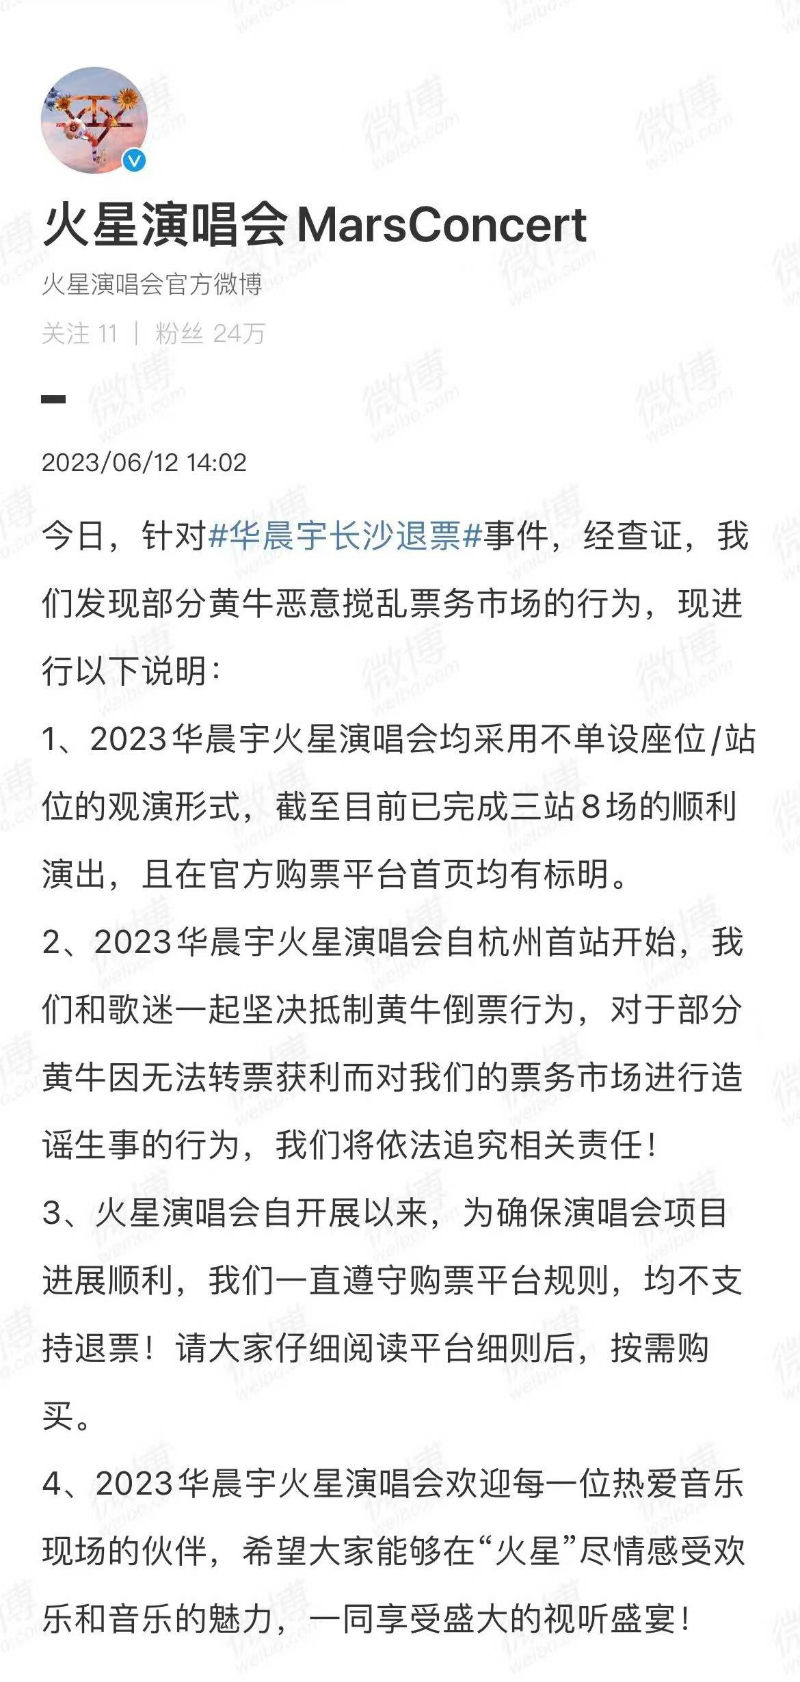 华晨宇长沙退票事件引关注  演唱会方回应黄牛扰乱市场